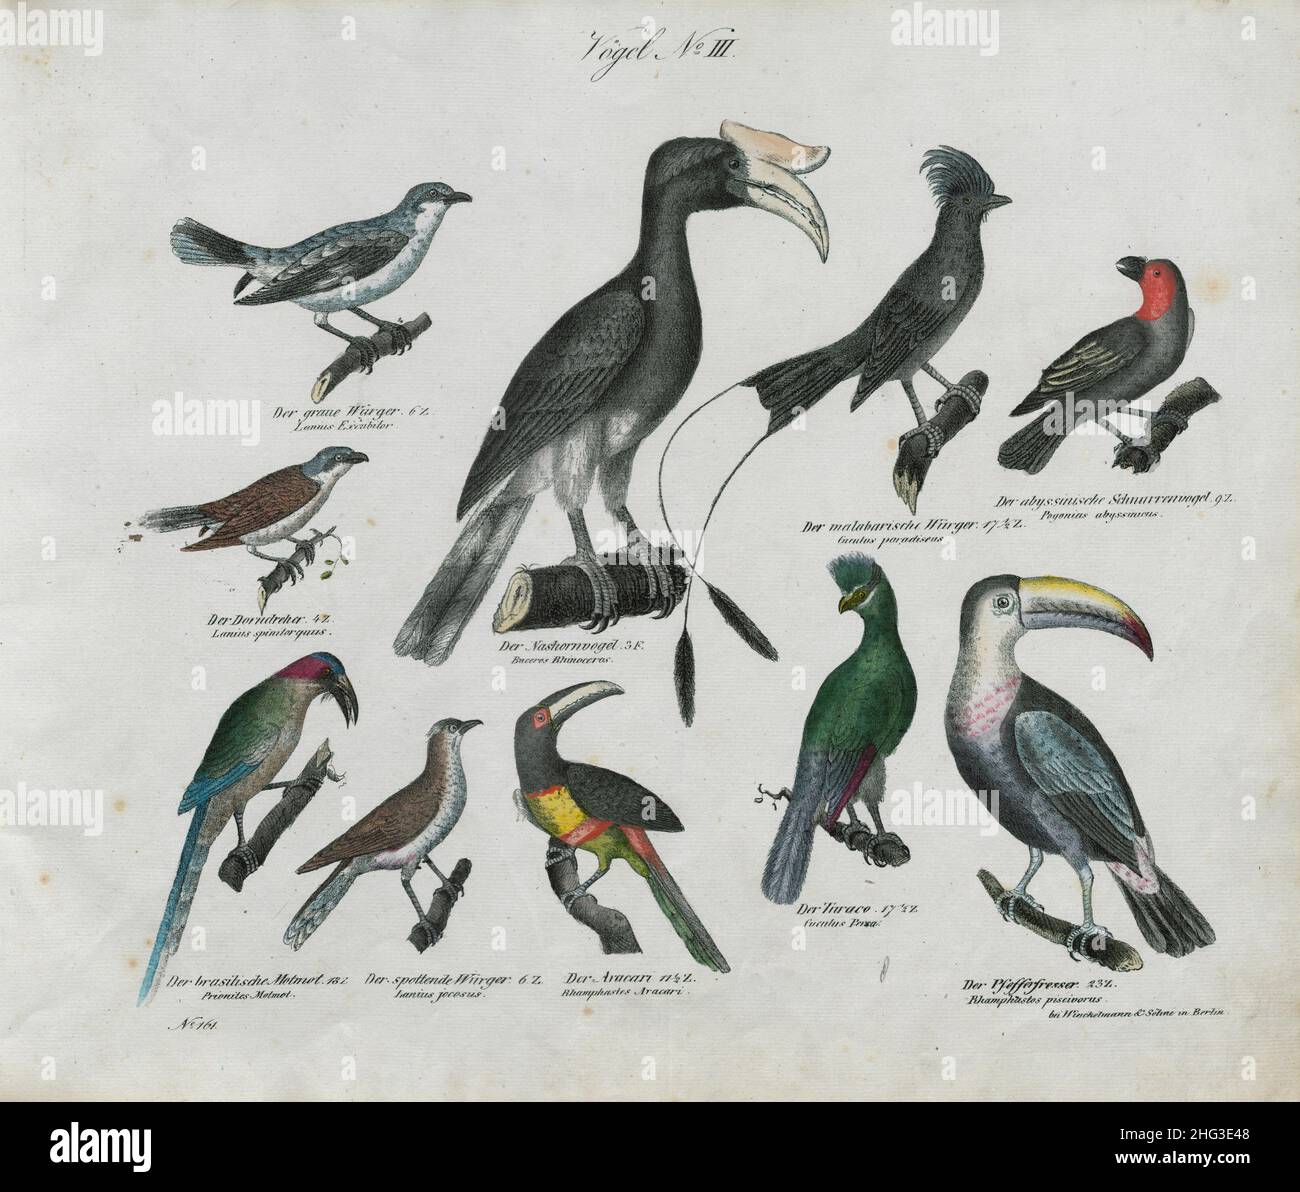 Disegni vintage di uccelli. N. III. Germania, 1836 (by Linnaeus classification, 1758) prima fila da sinistra a destra: Il gambero grigio; la becco; la ma Foto Stock